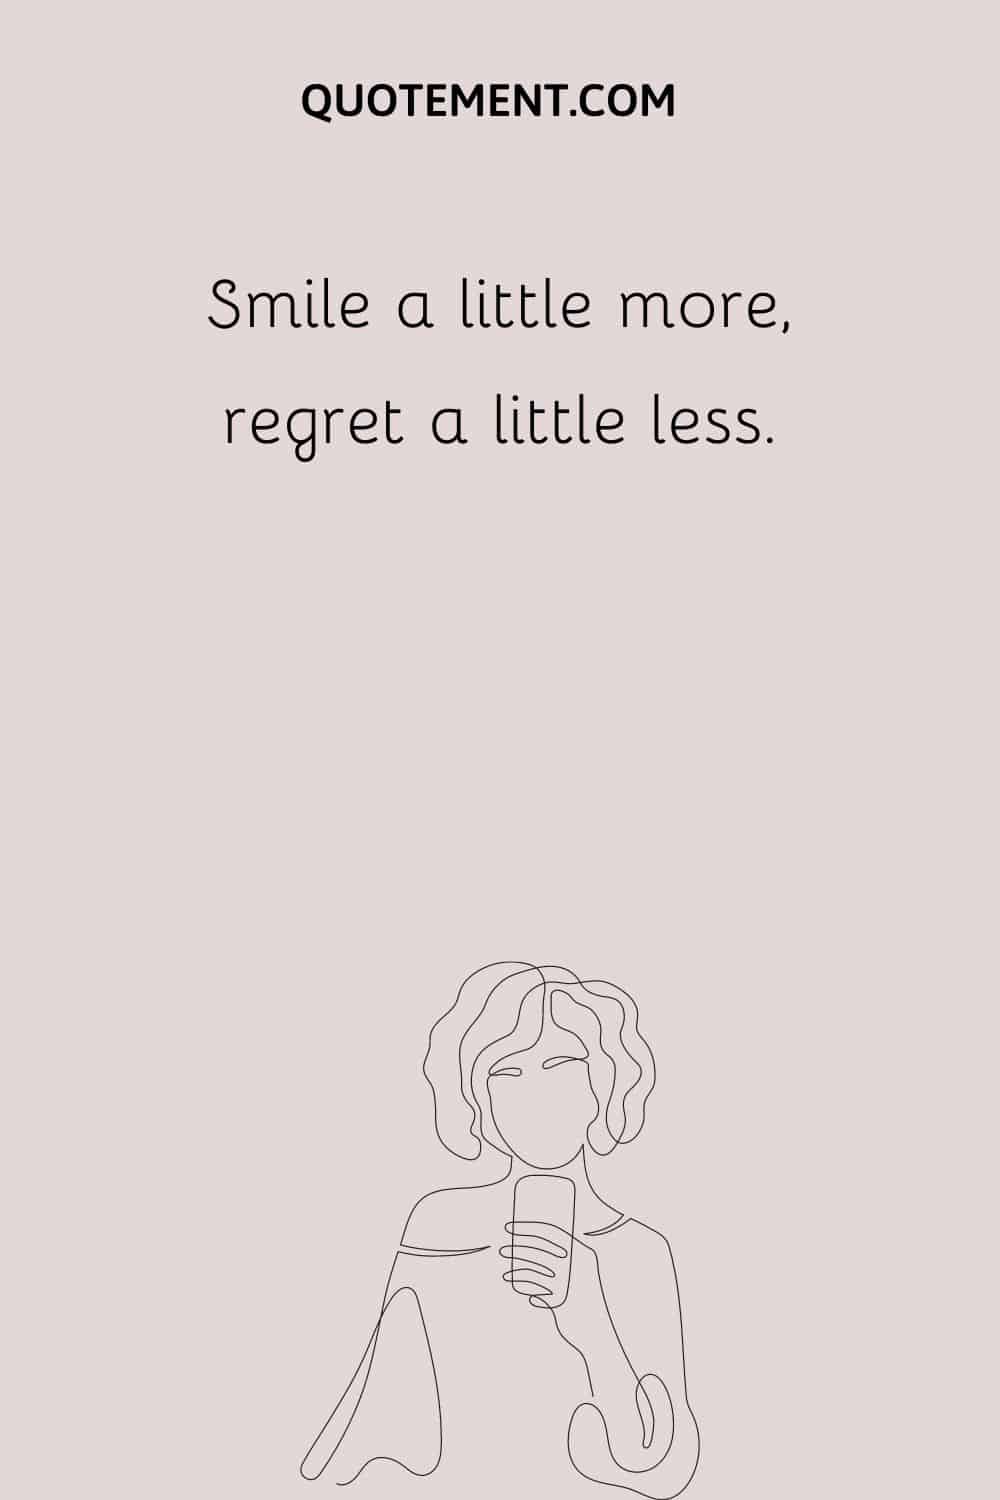 Smile a little more, regret a little less.